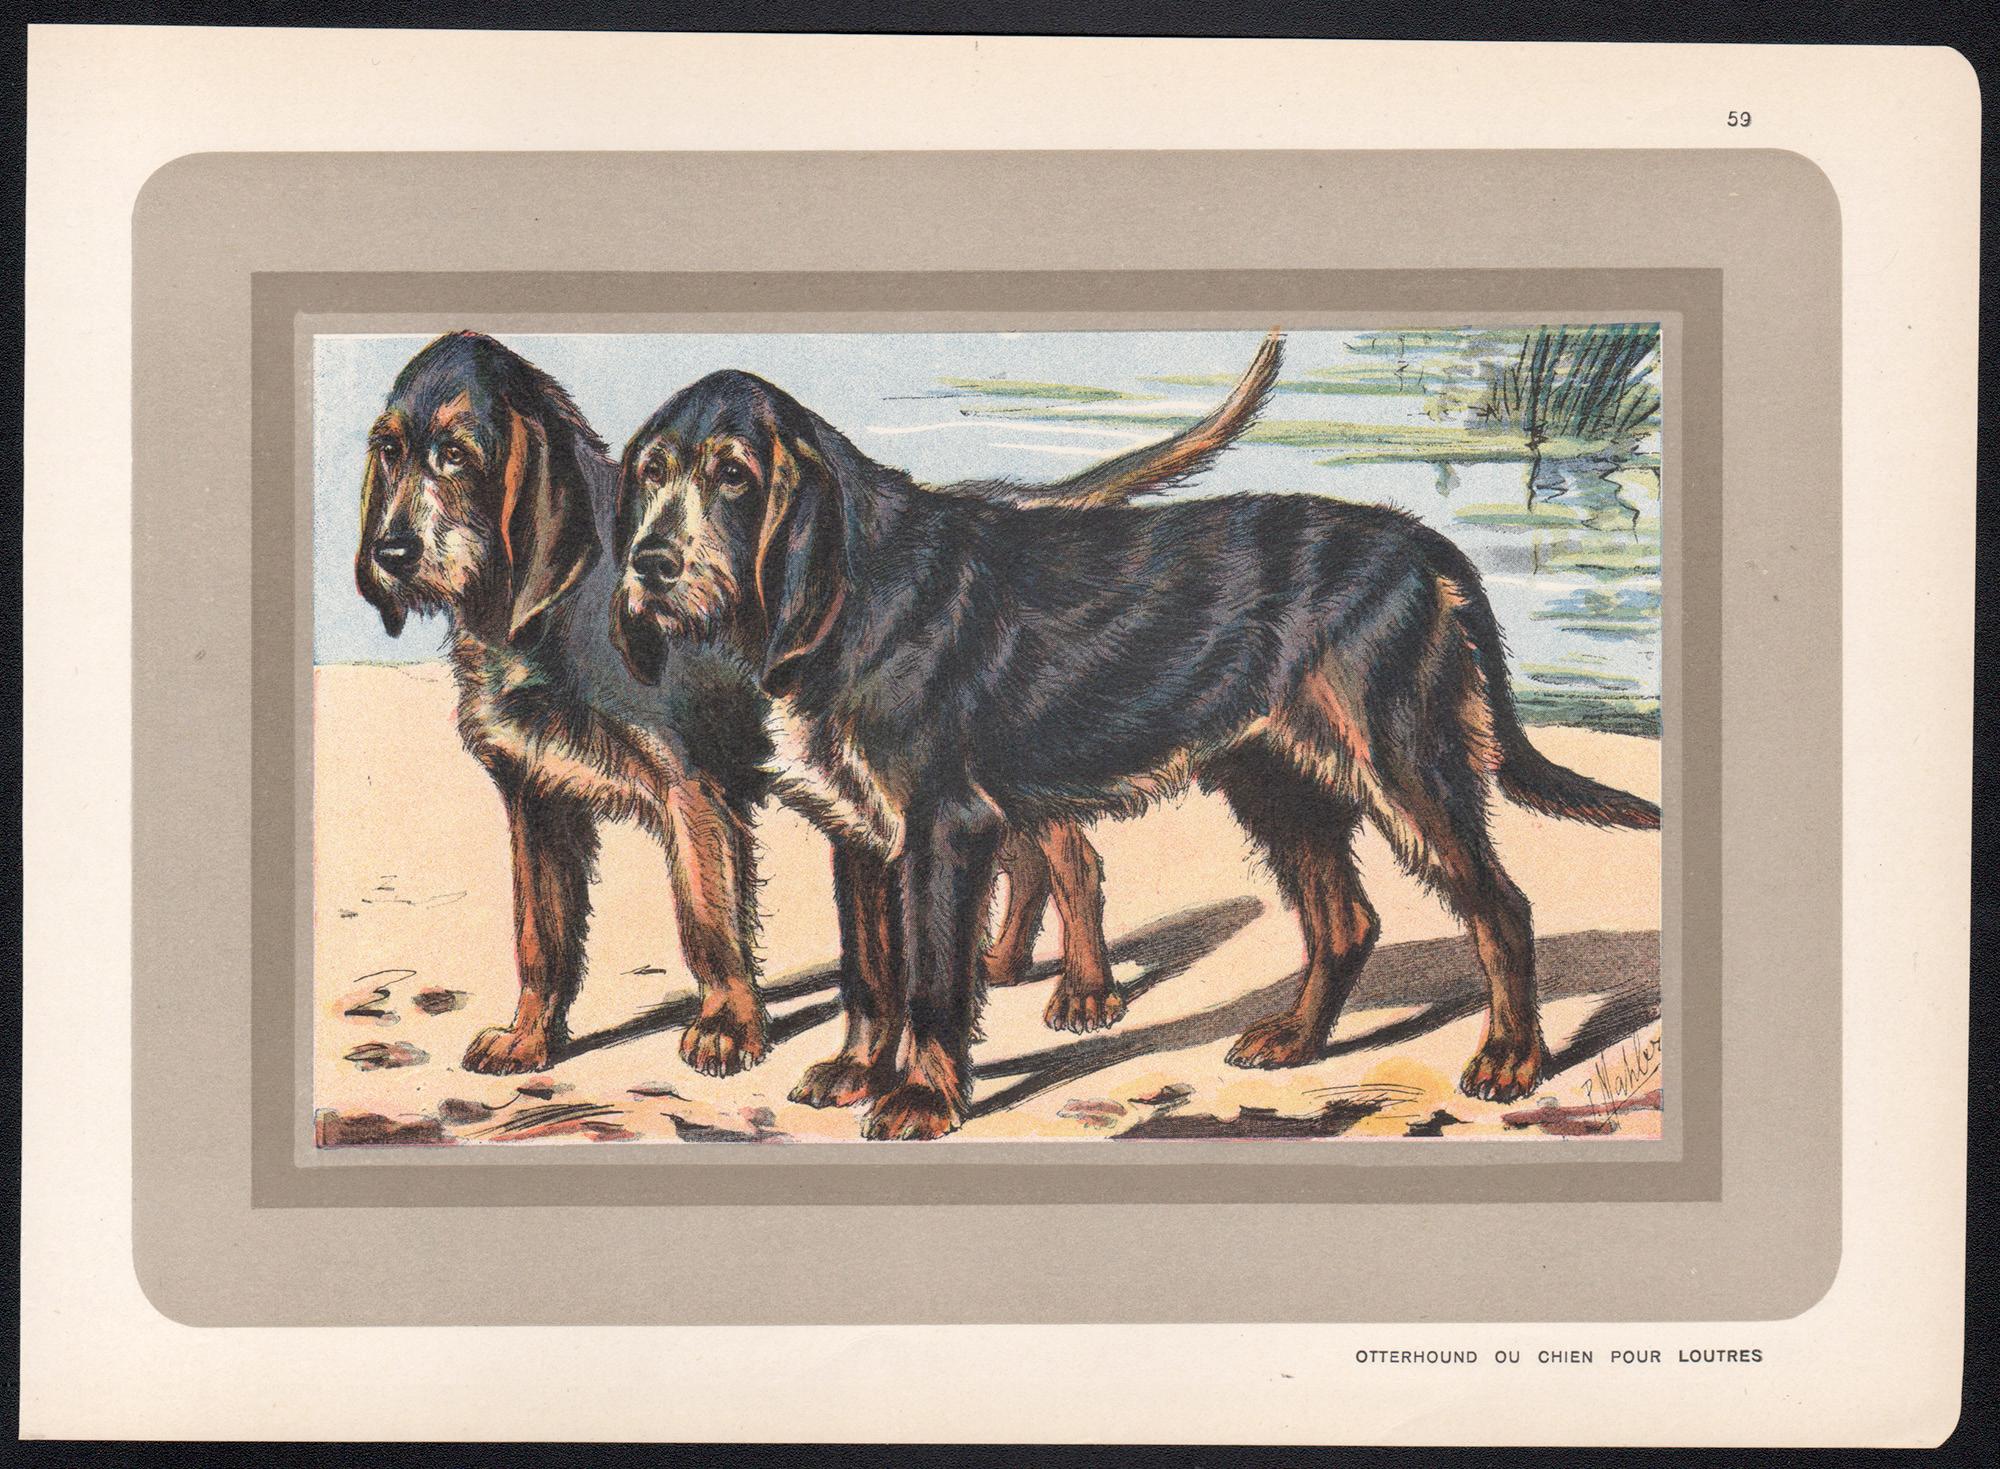 Otterhound Ou Chien Pour Loutres, französischer Hund, Hundechromolithographie, 1930er Jahre – Print von P. Mahler